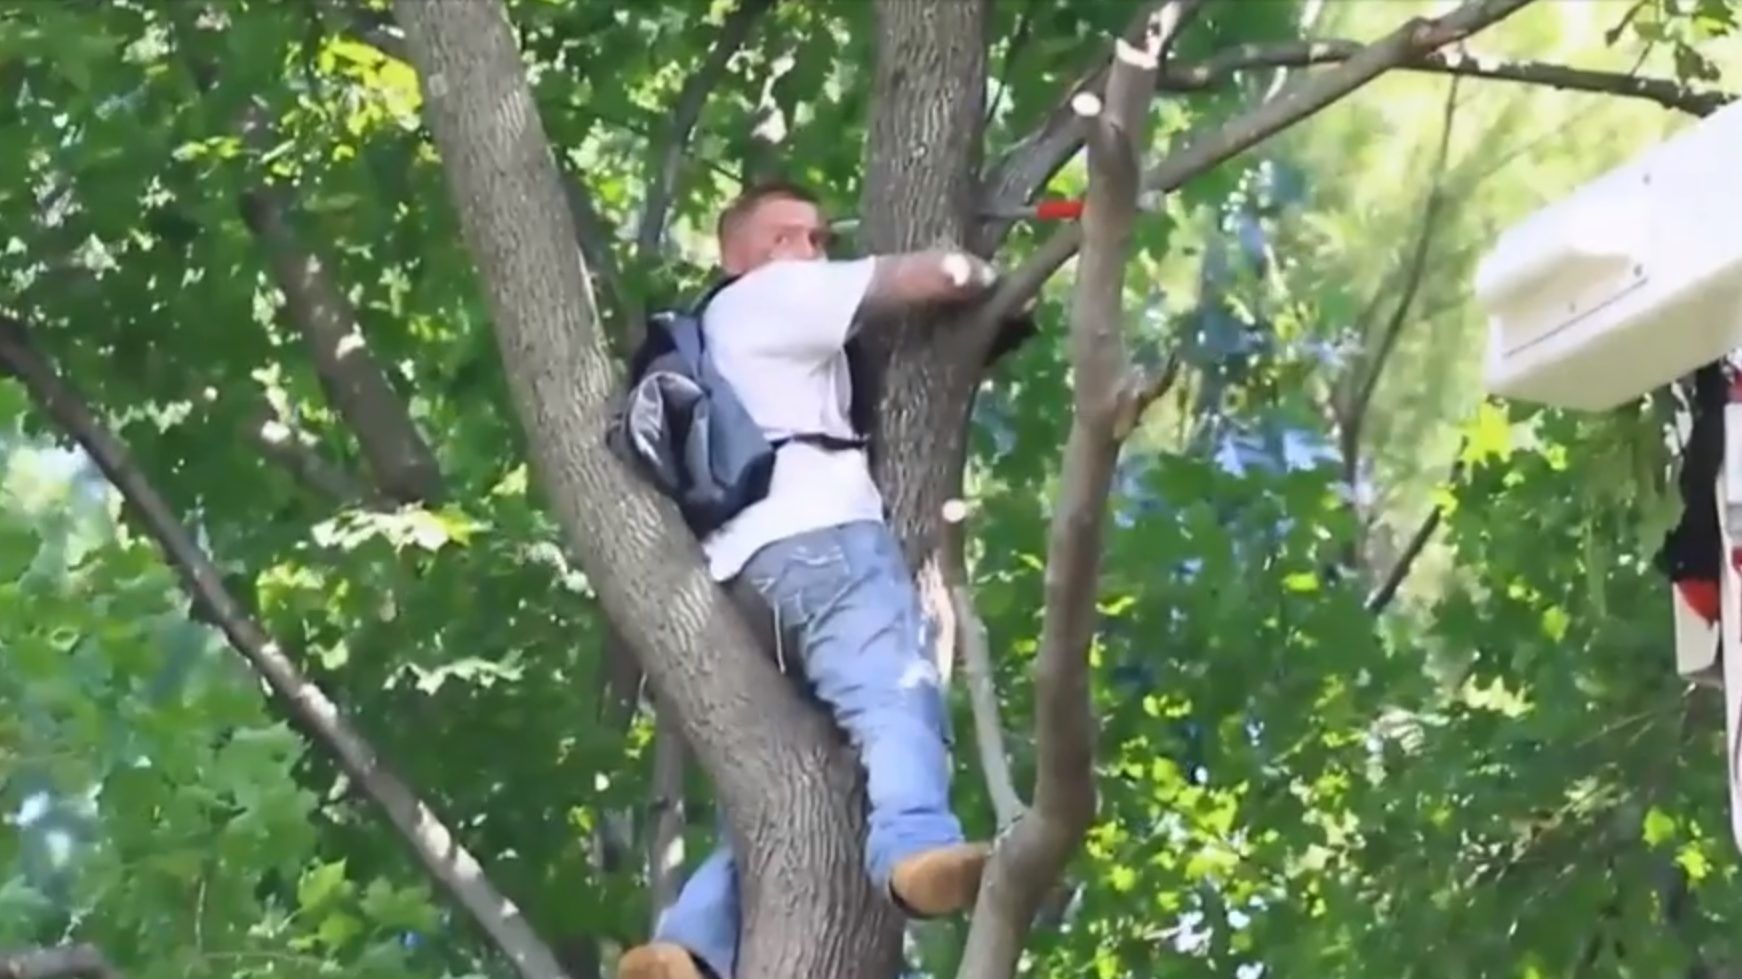 Tűzoltók mentették le a fáról a férfit, aki a fára mászott macskát akarta lementeni